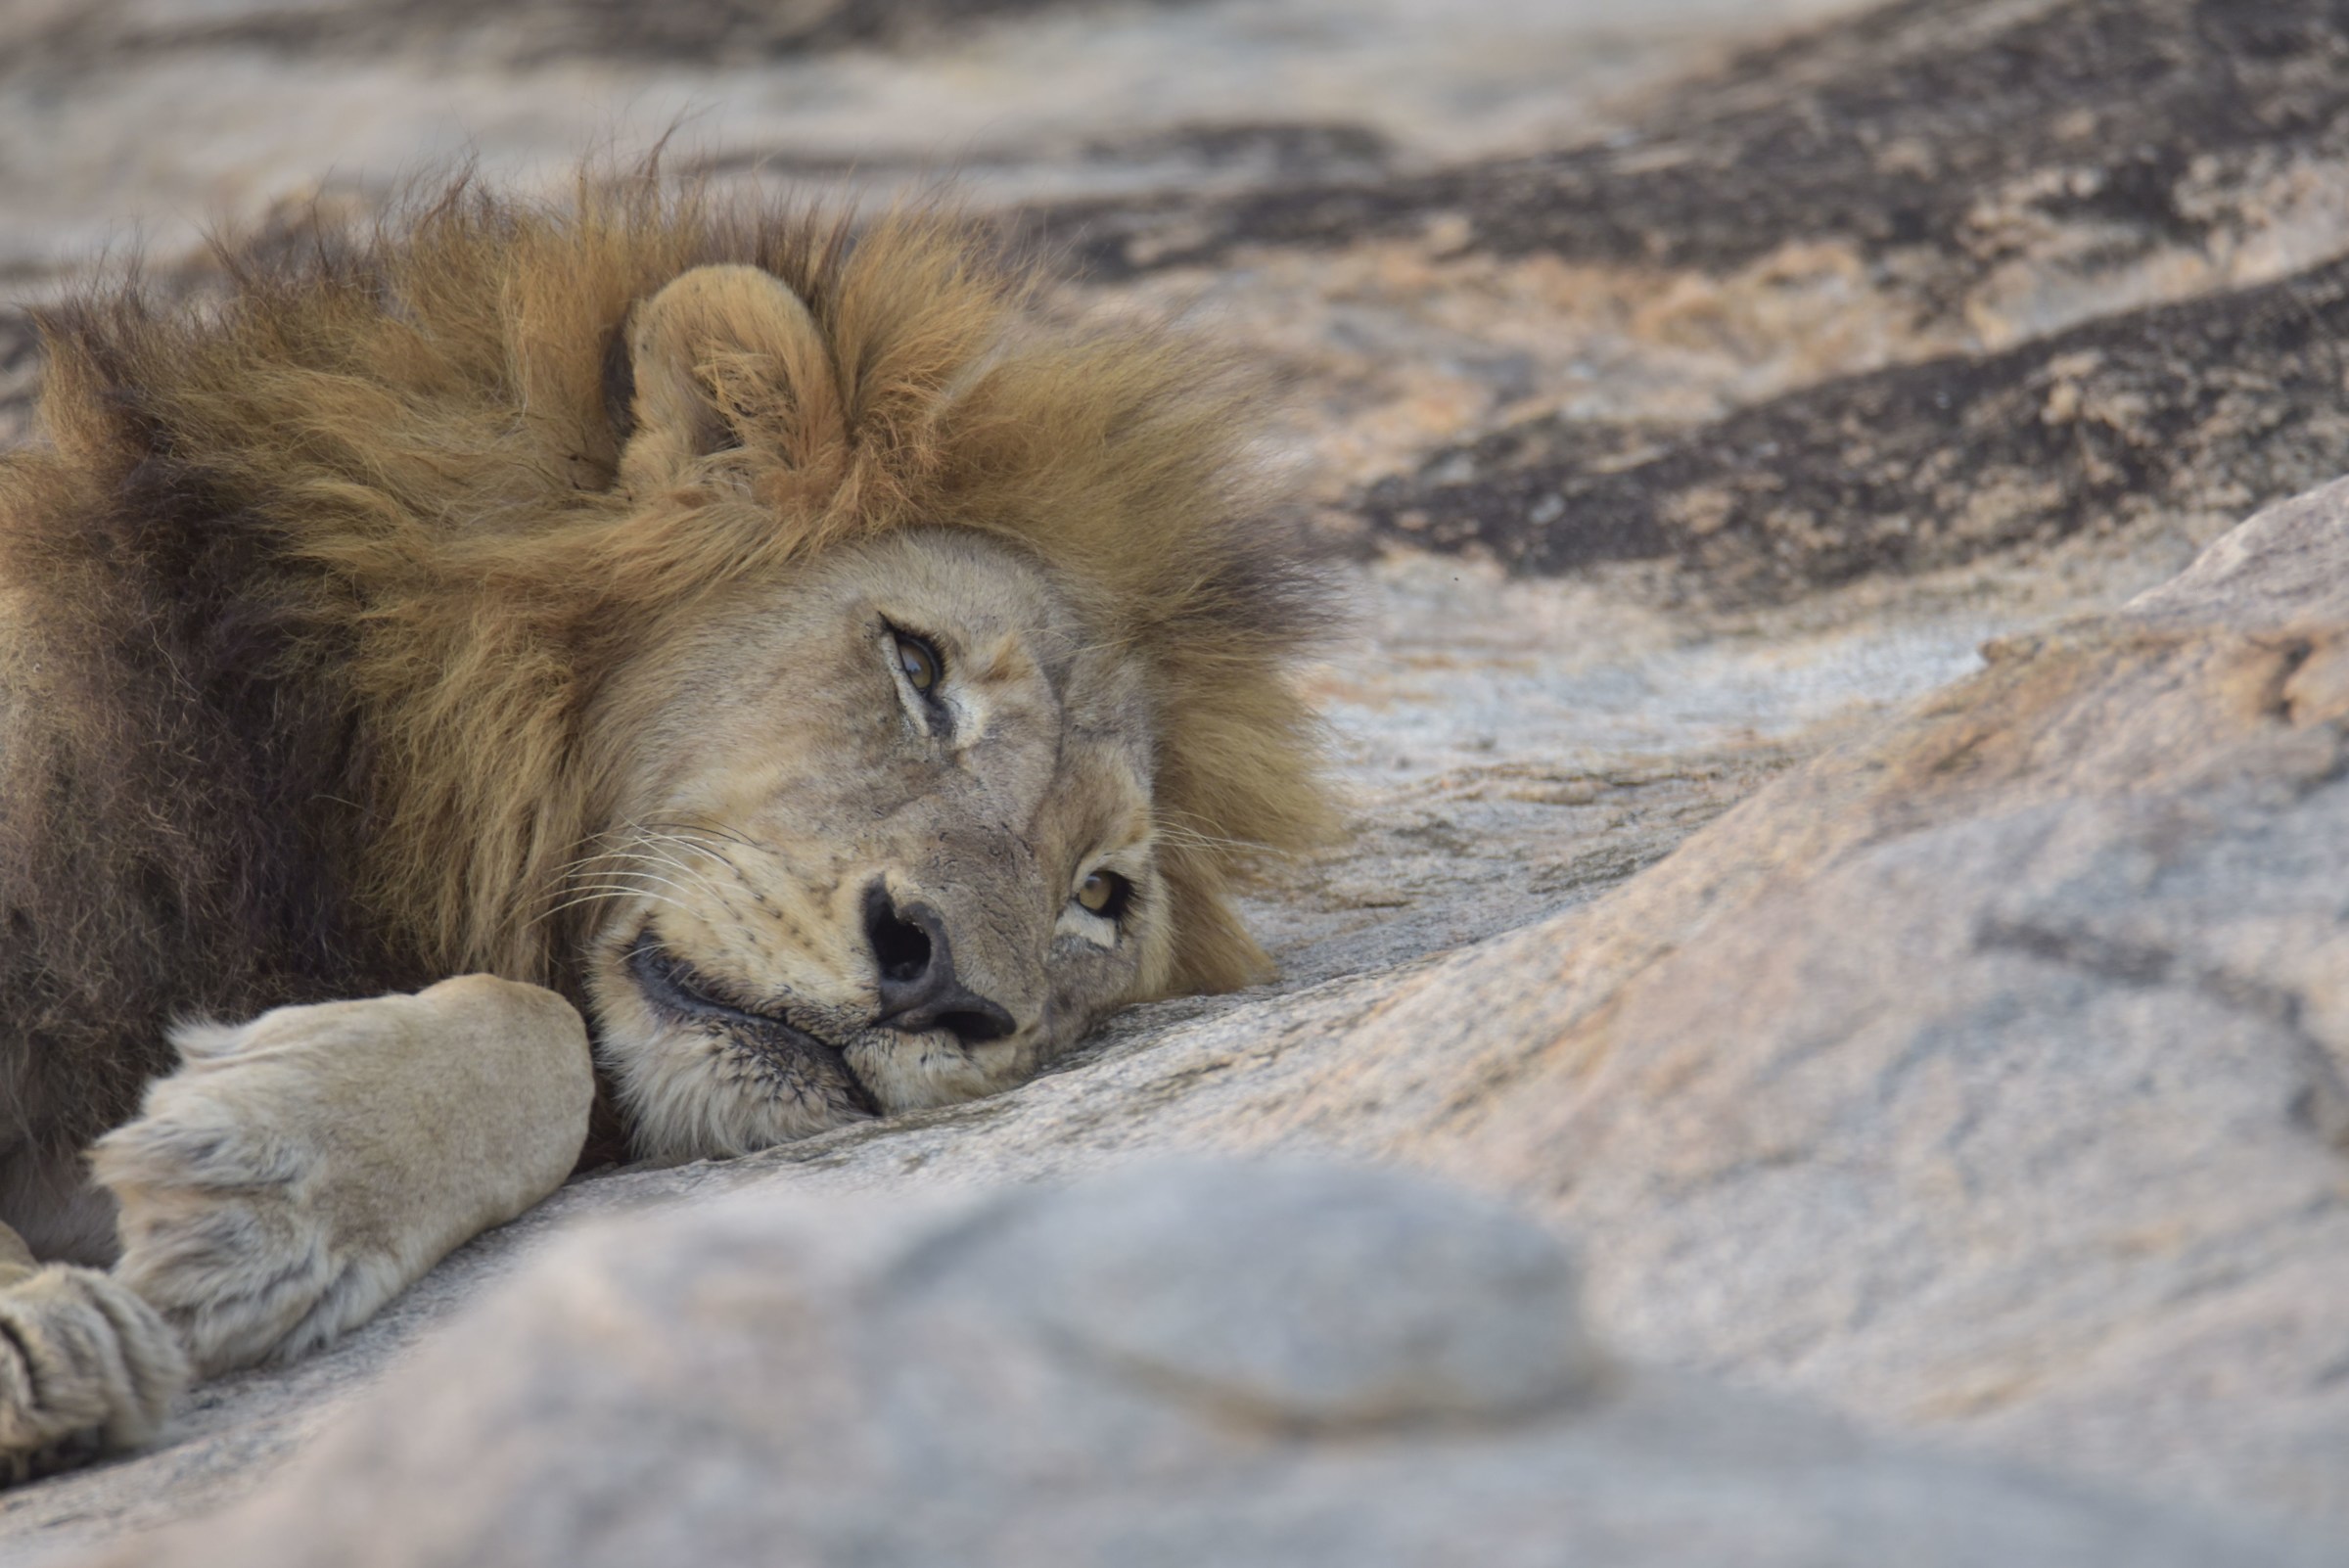 Pensive Lion ........